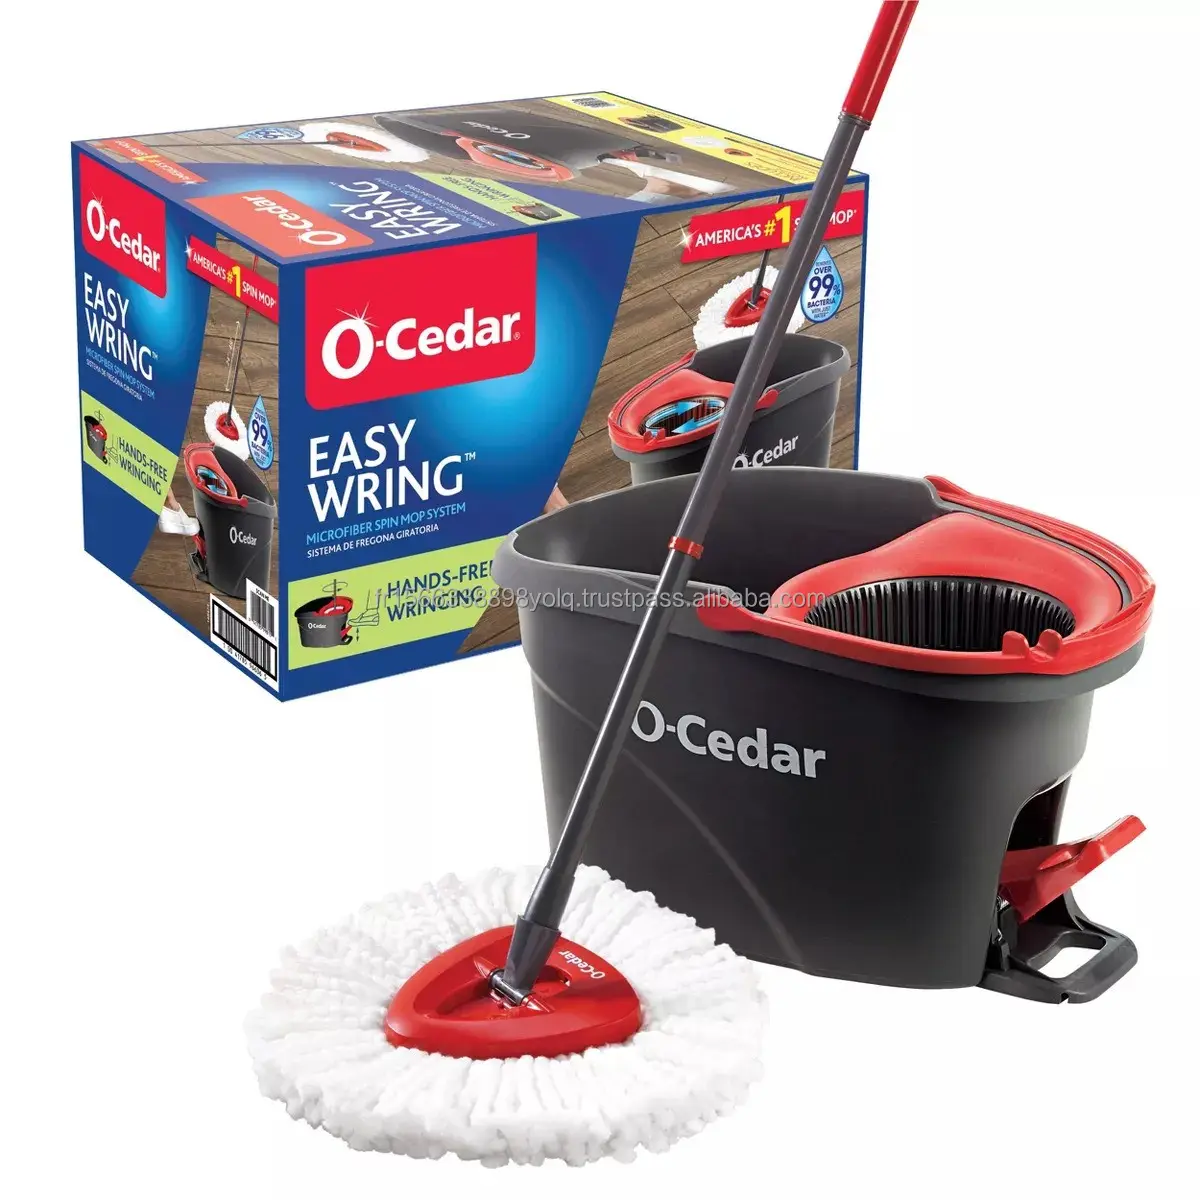 O-cedro EasyWring microfibra gira Mop, secchio sistema di pulizia del pavimento O-Cedar facile strizzare fa roteare mocio e secchio per la pulizia della casa